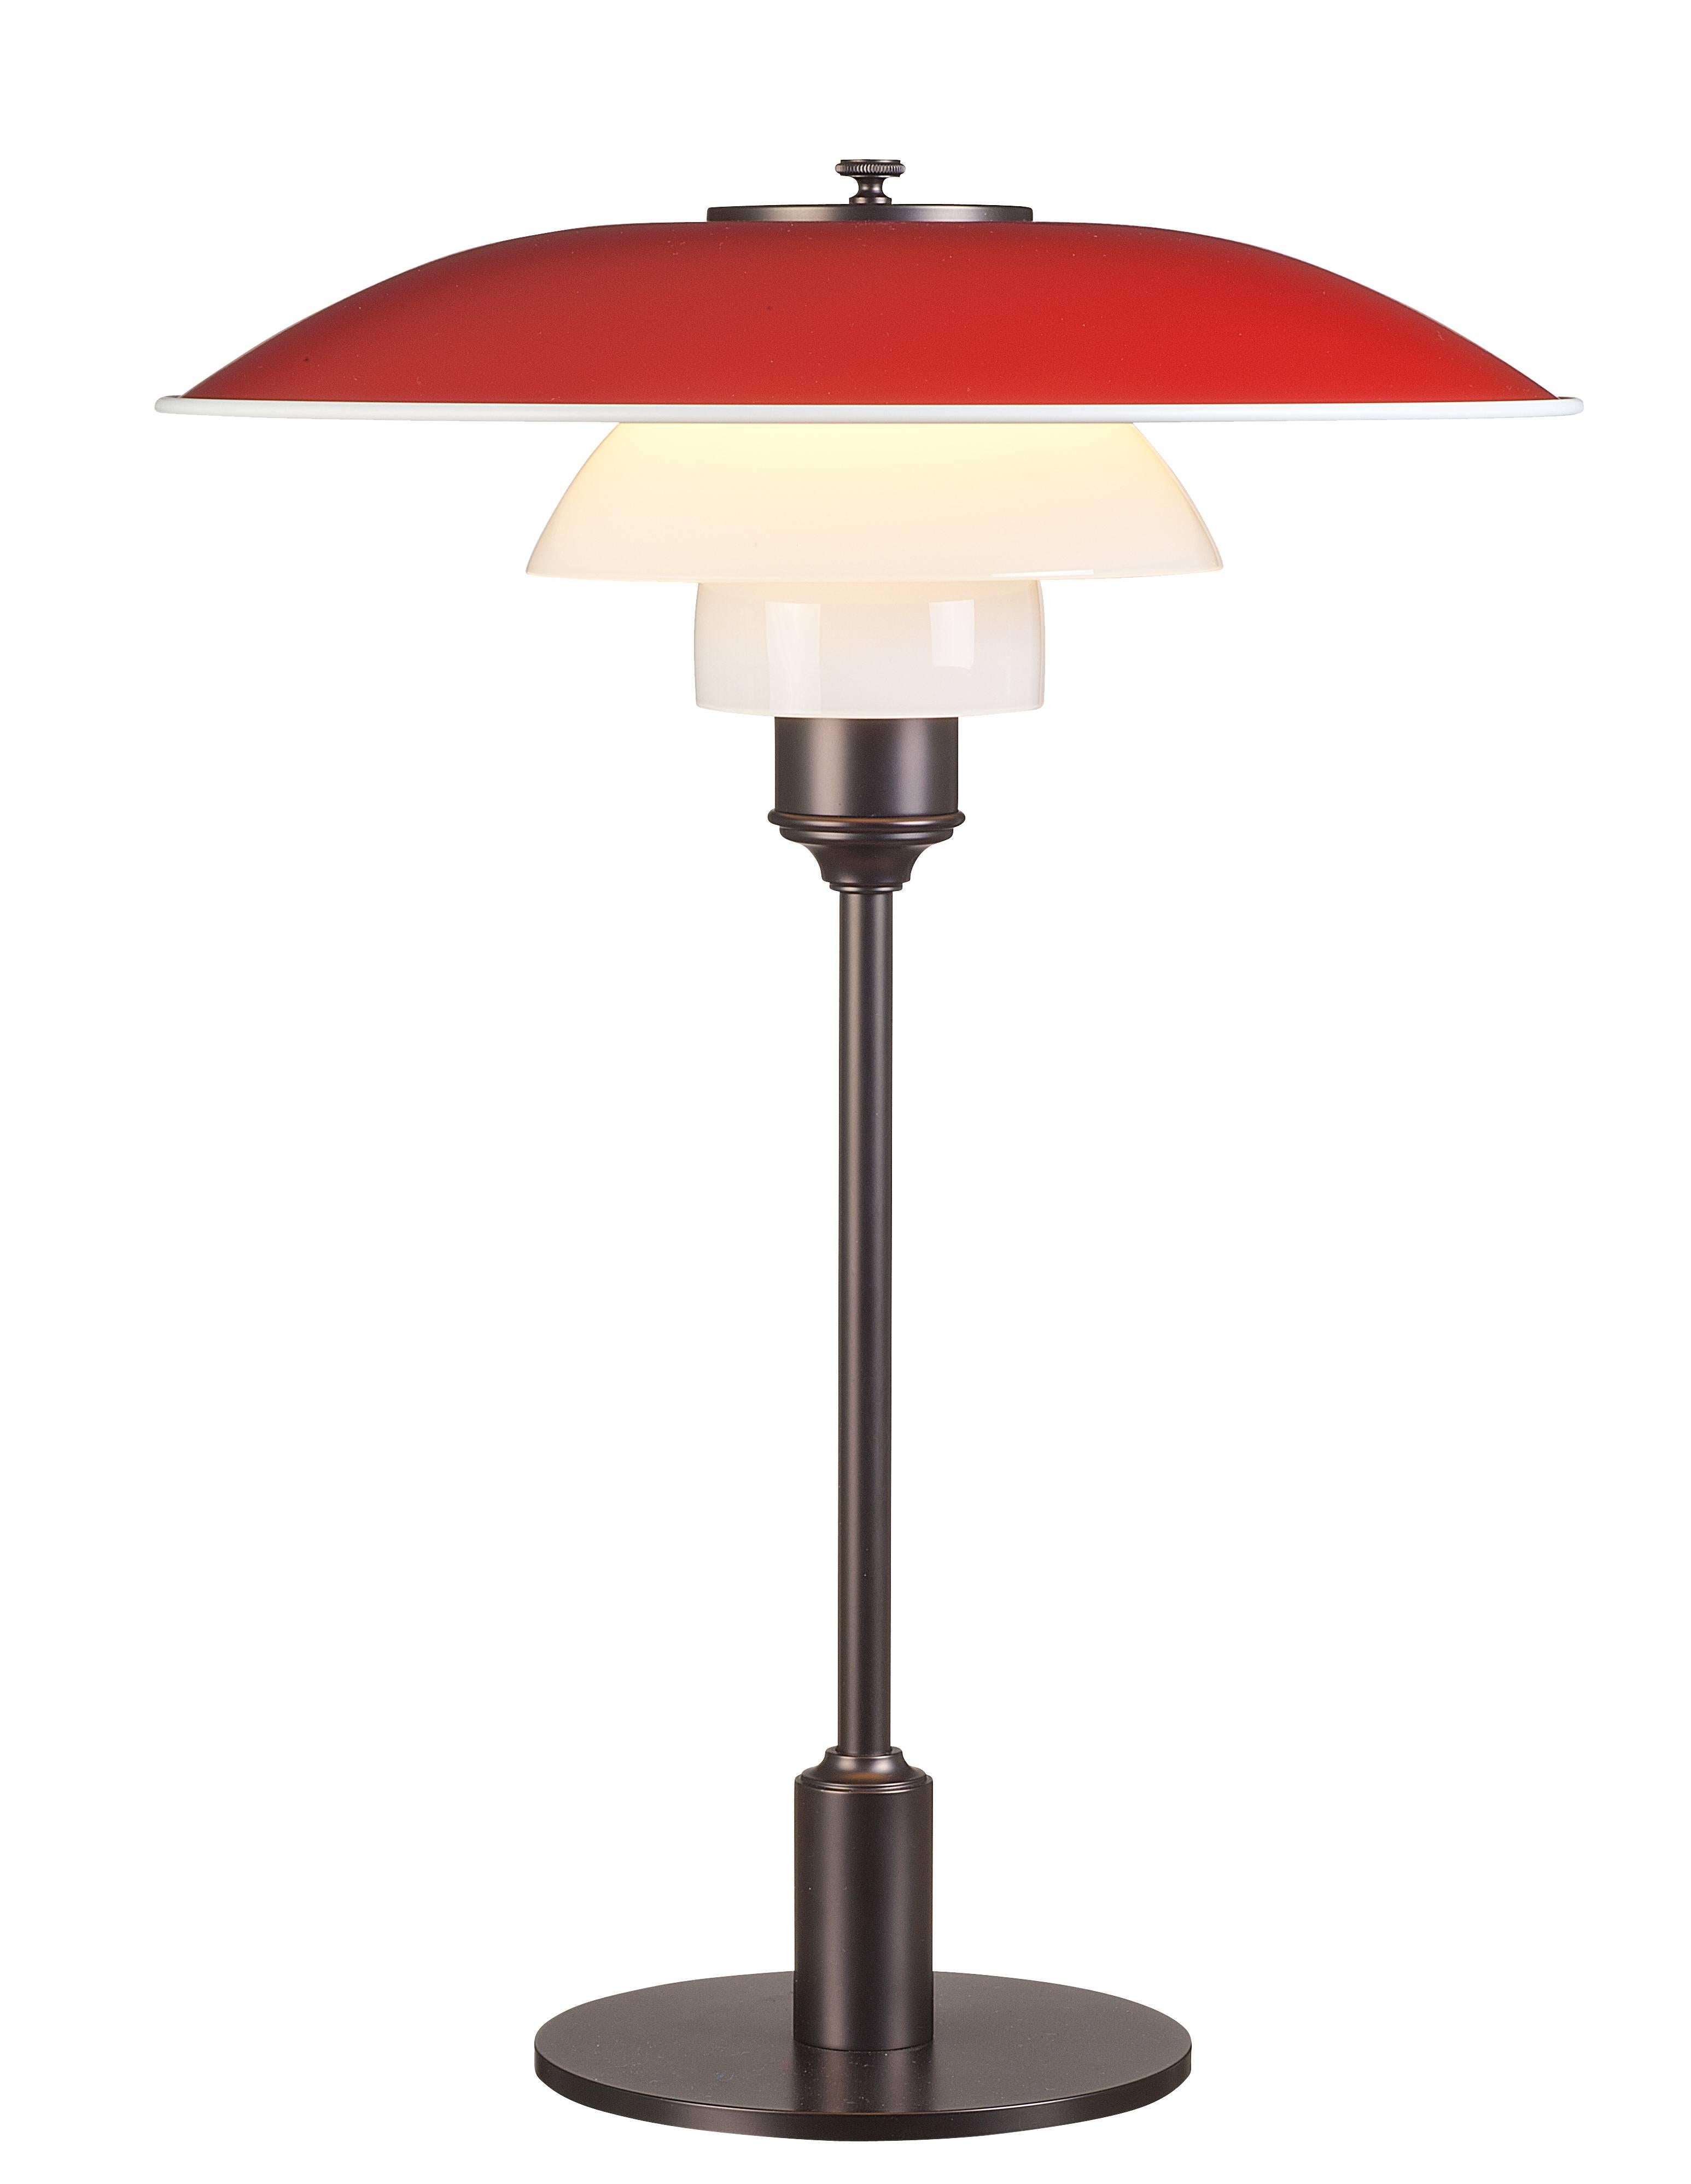 Lampe de table PH 3½-2½ de Poul Whitingen pour Louis Poulsen en blanc.

Le design légendaire de Poul Henning Sen découle de son propre et brillant système à trois abat-jours datant de la fin des années 1920. Le design original de Poul Henningsen à